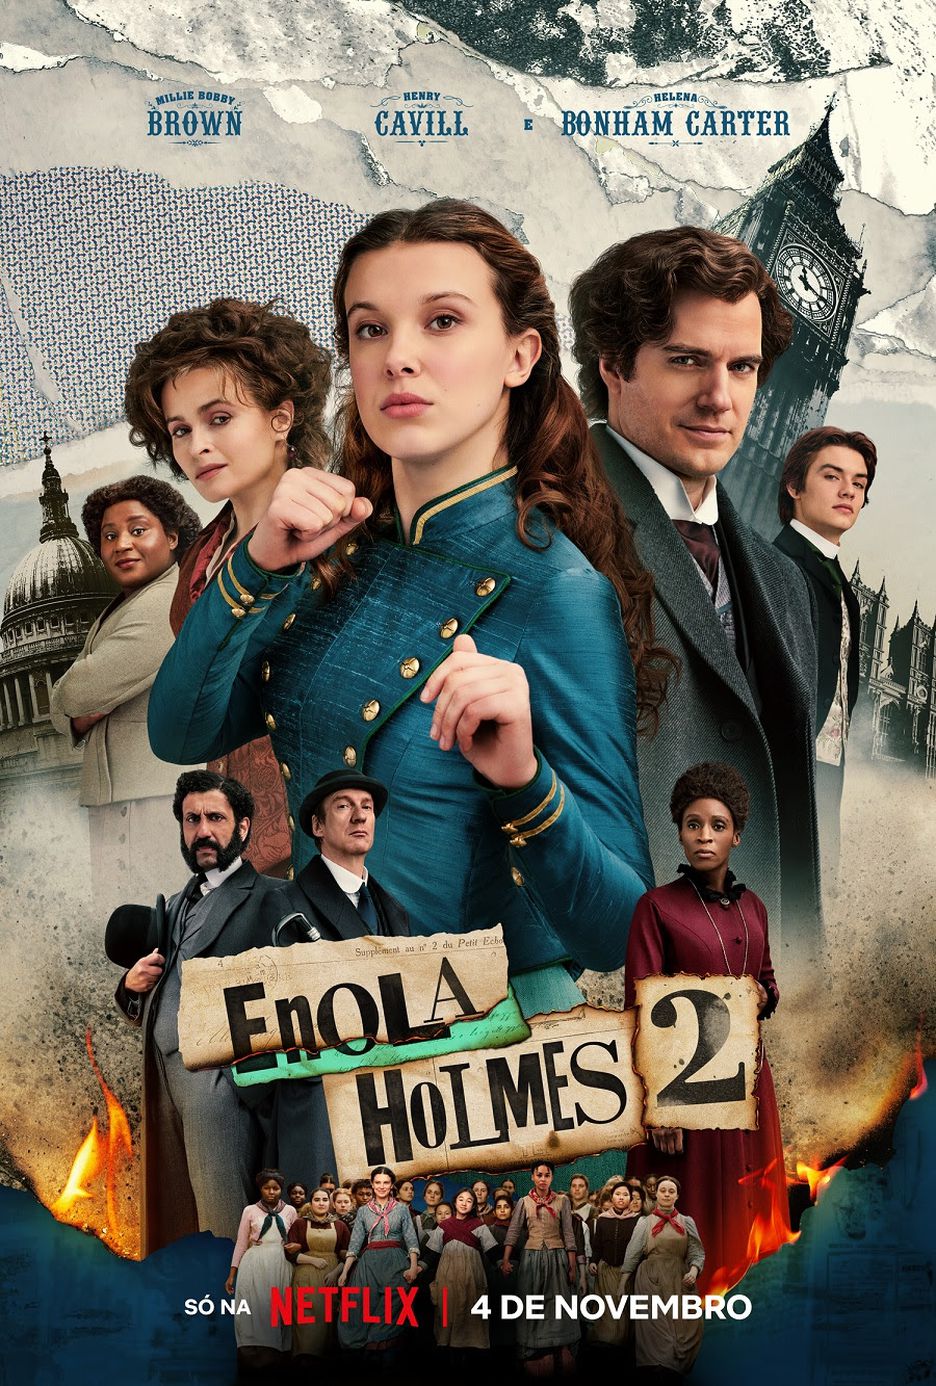 enolaholmes2 Enola Holmes 2 - Pôster e trailers e data de lançamento divulgados